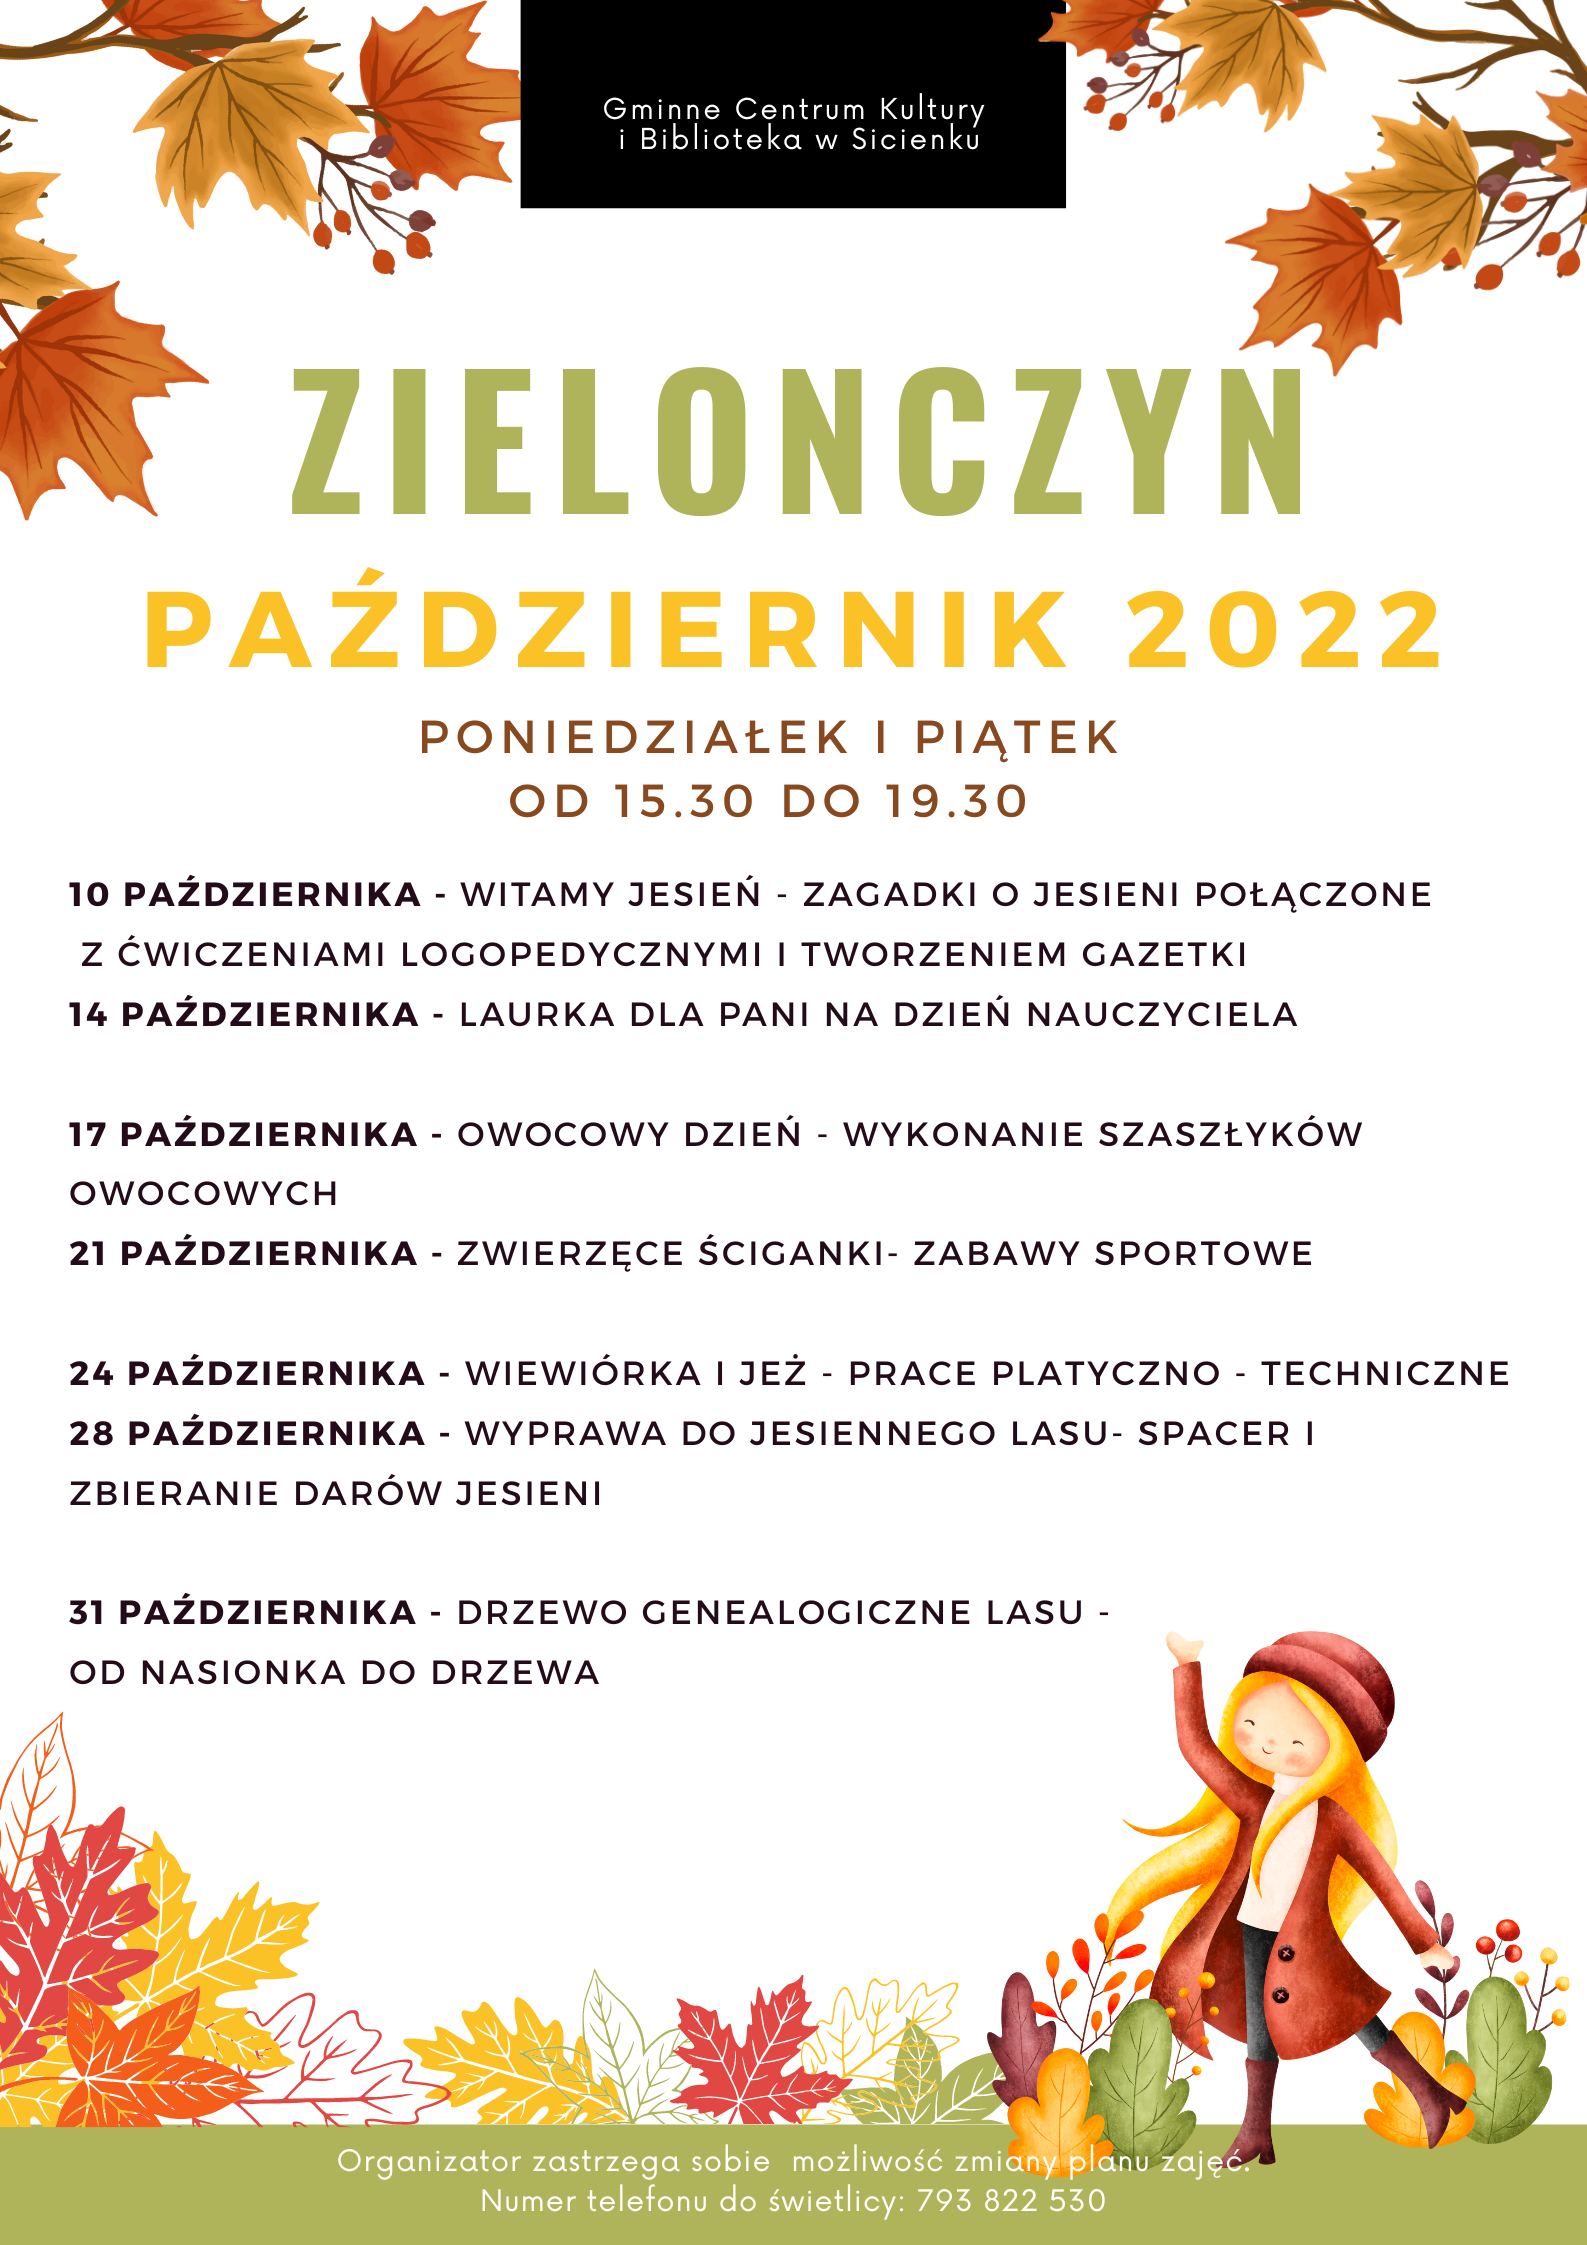 Plan pracy październik 2022- świetlica wiejska w Zielonczynie.